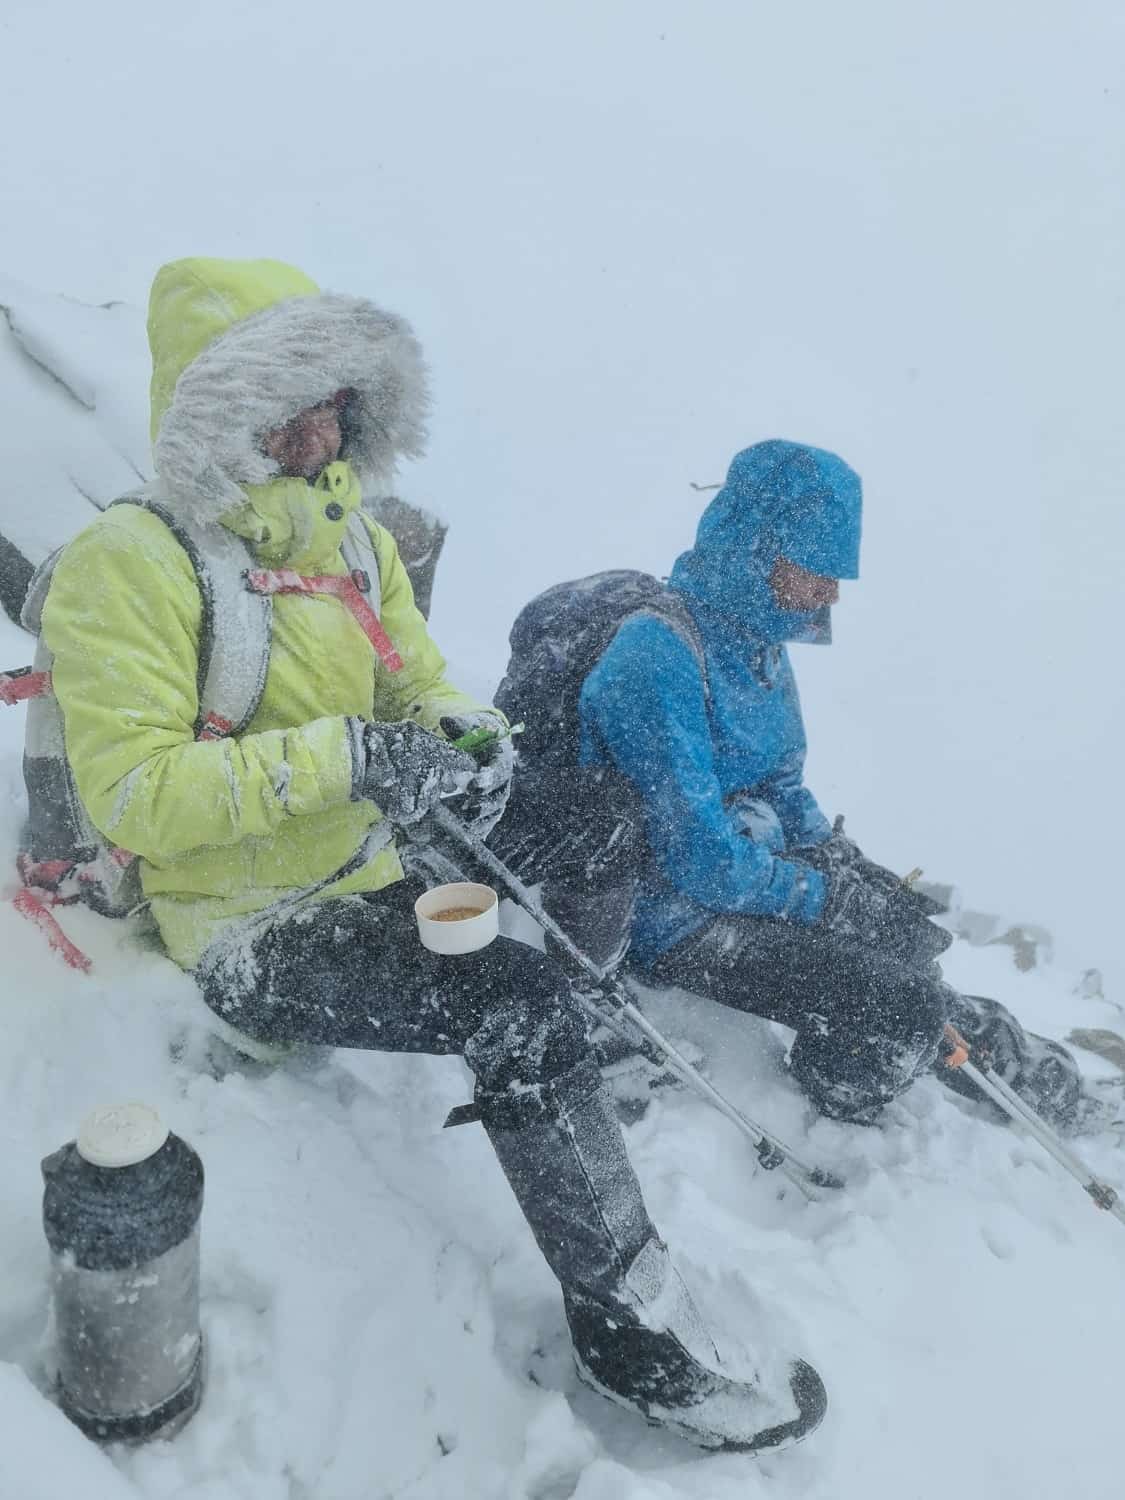 Снежные барсы покинули алтайскую сторону хребта Чихачева из-за суровой зимы 